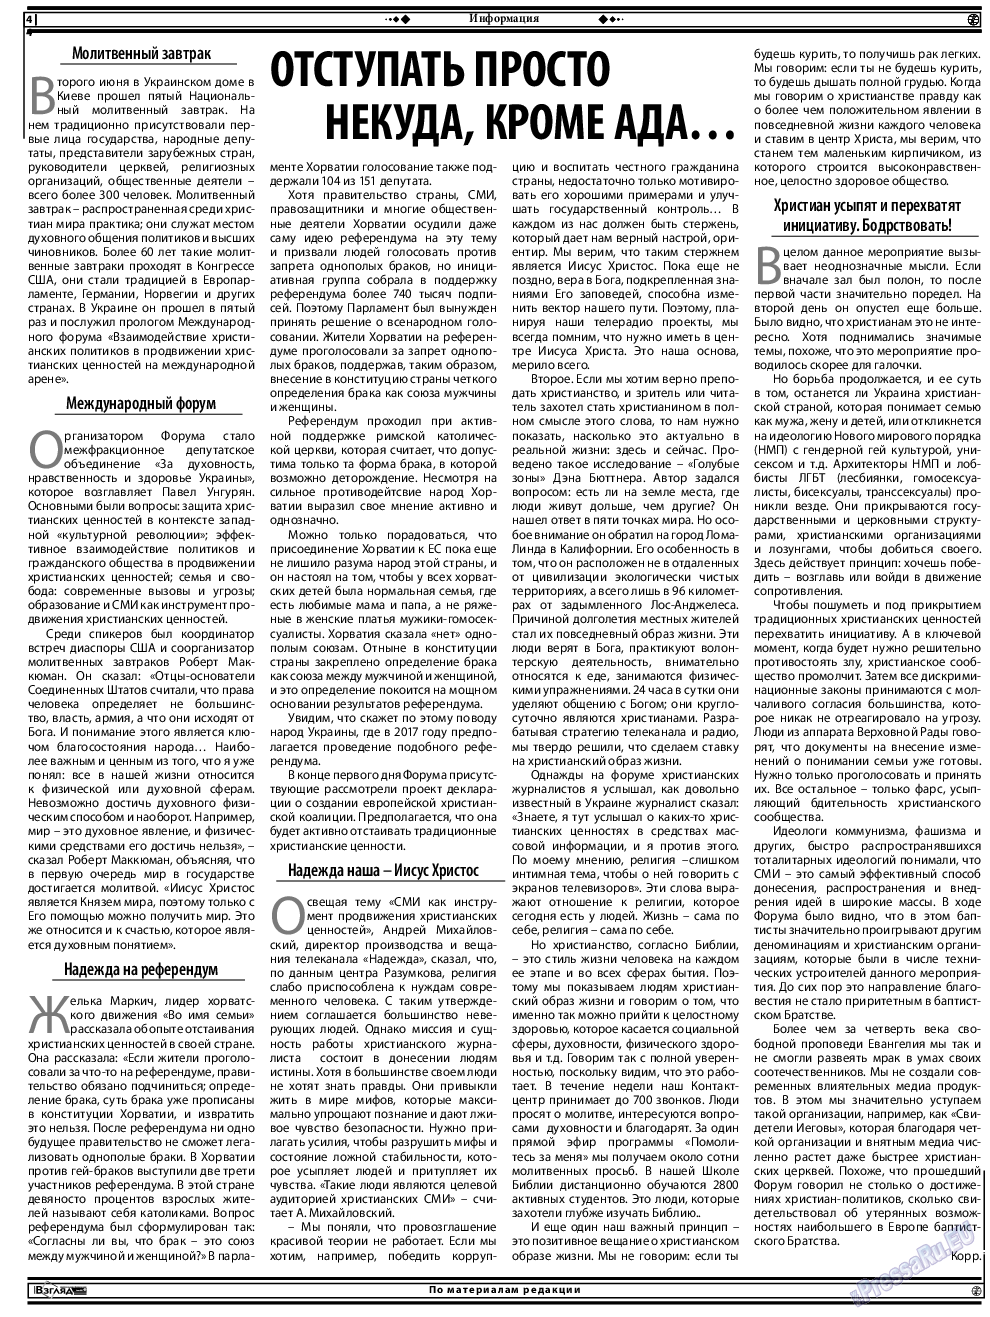 Христианская газета (газета). 2016 год, номер 7, стр. 18